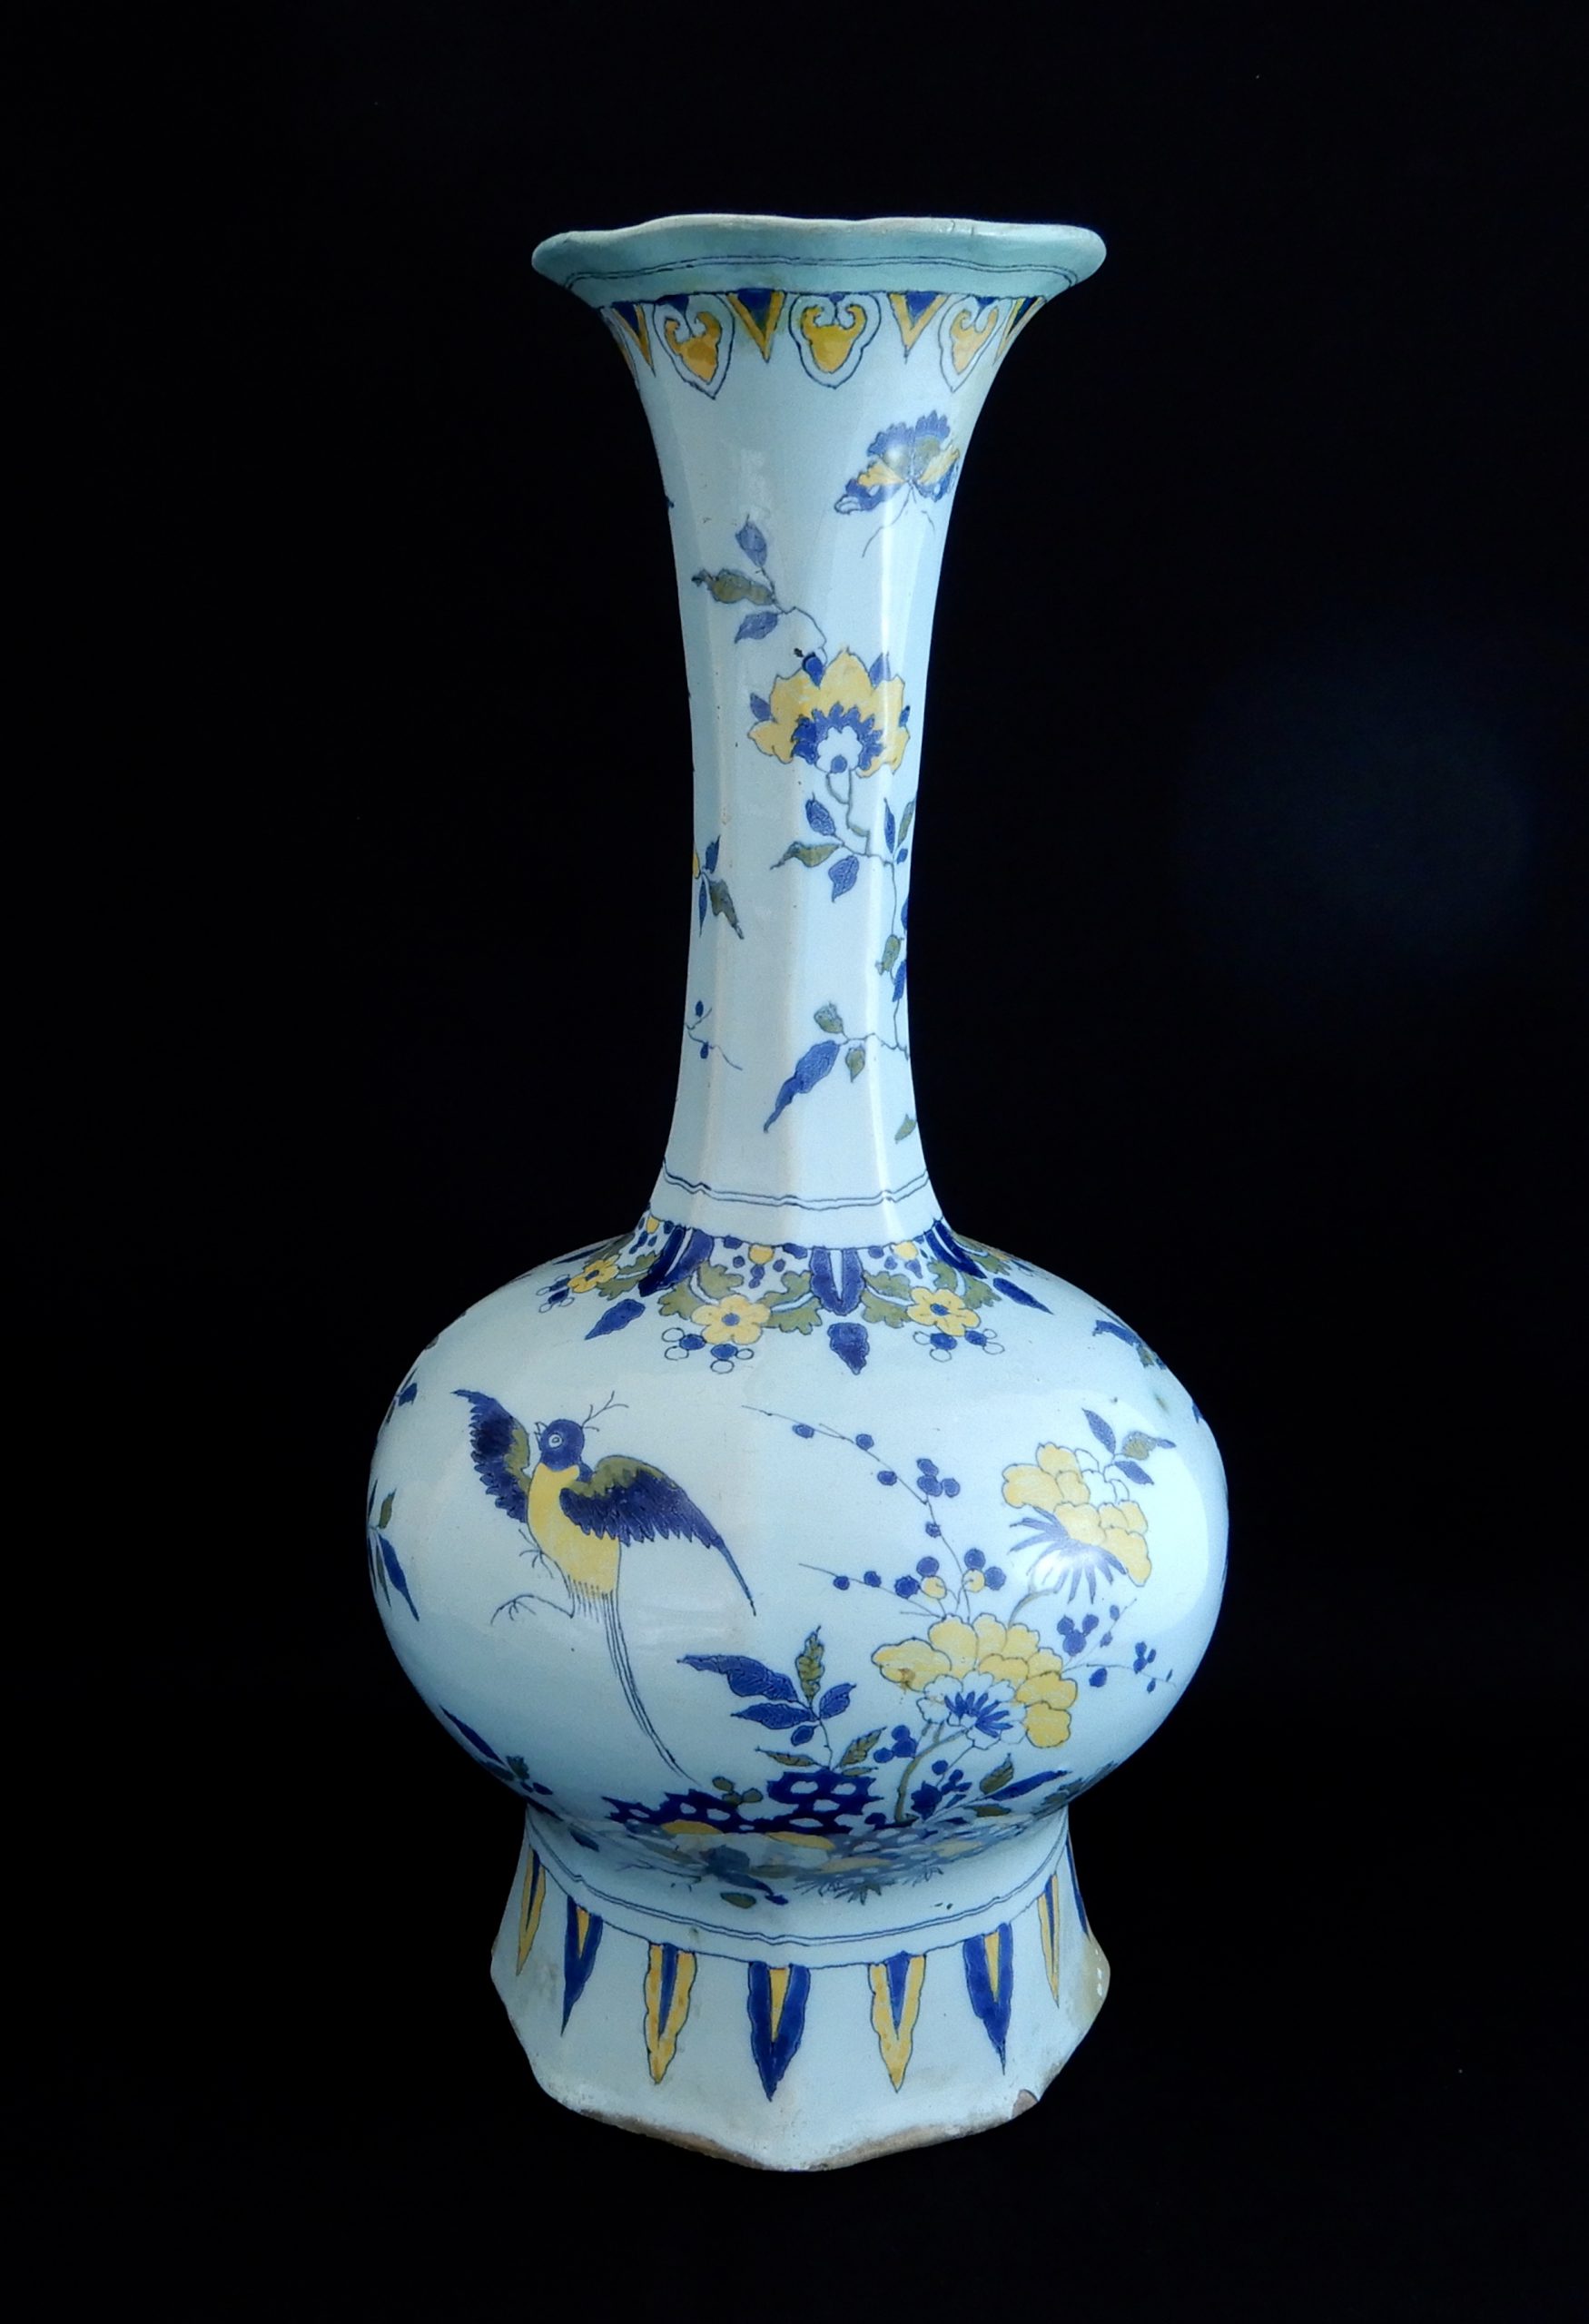 オランダ デルフト窯 花鳥紋色絵瓶 17世紀末 群馬県前橋市の御客様から